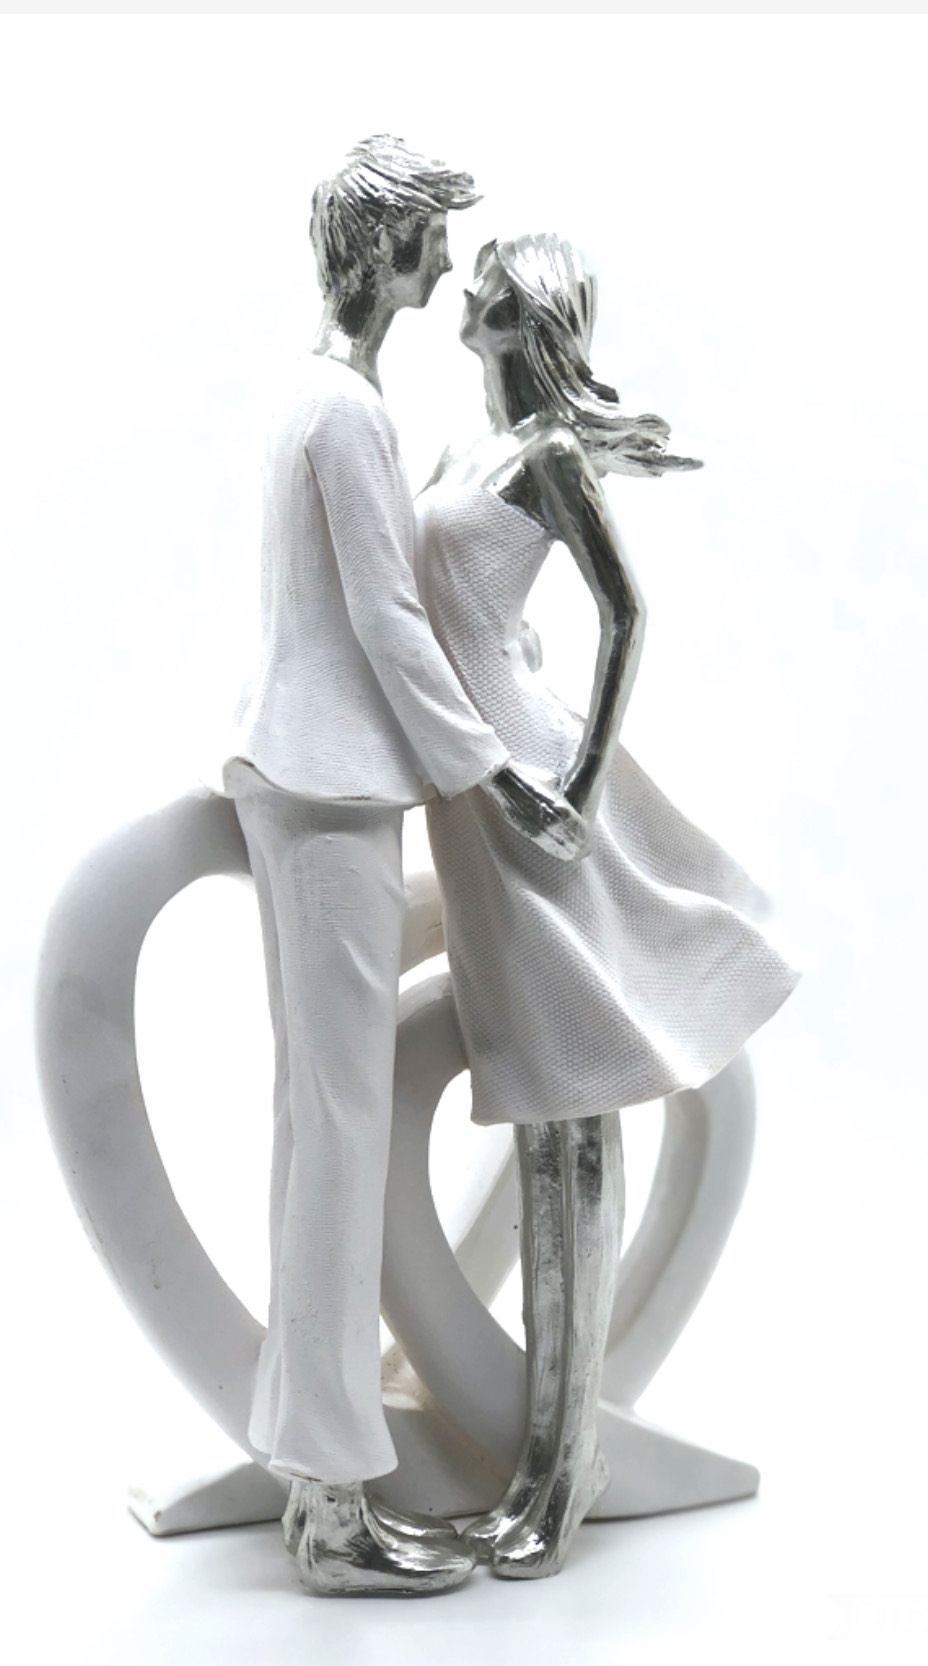 Dekofigur Liebespaar mit Herz 24cm Skulptur modern weiß/silber formano 